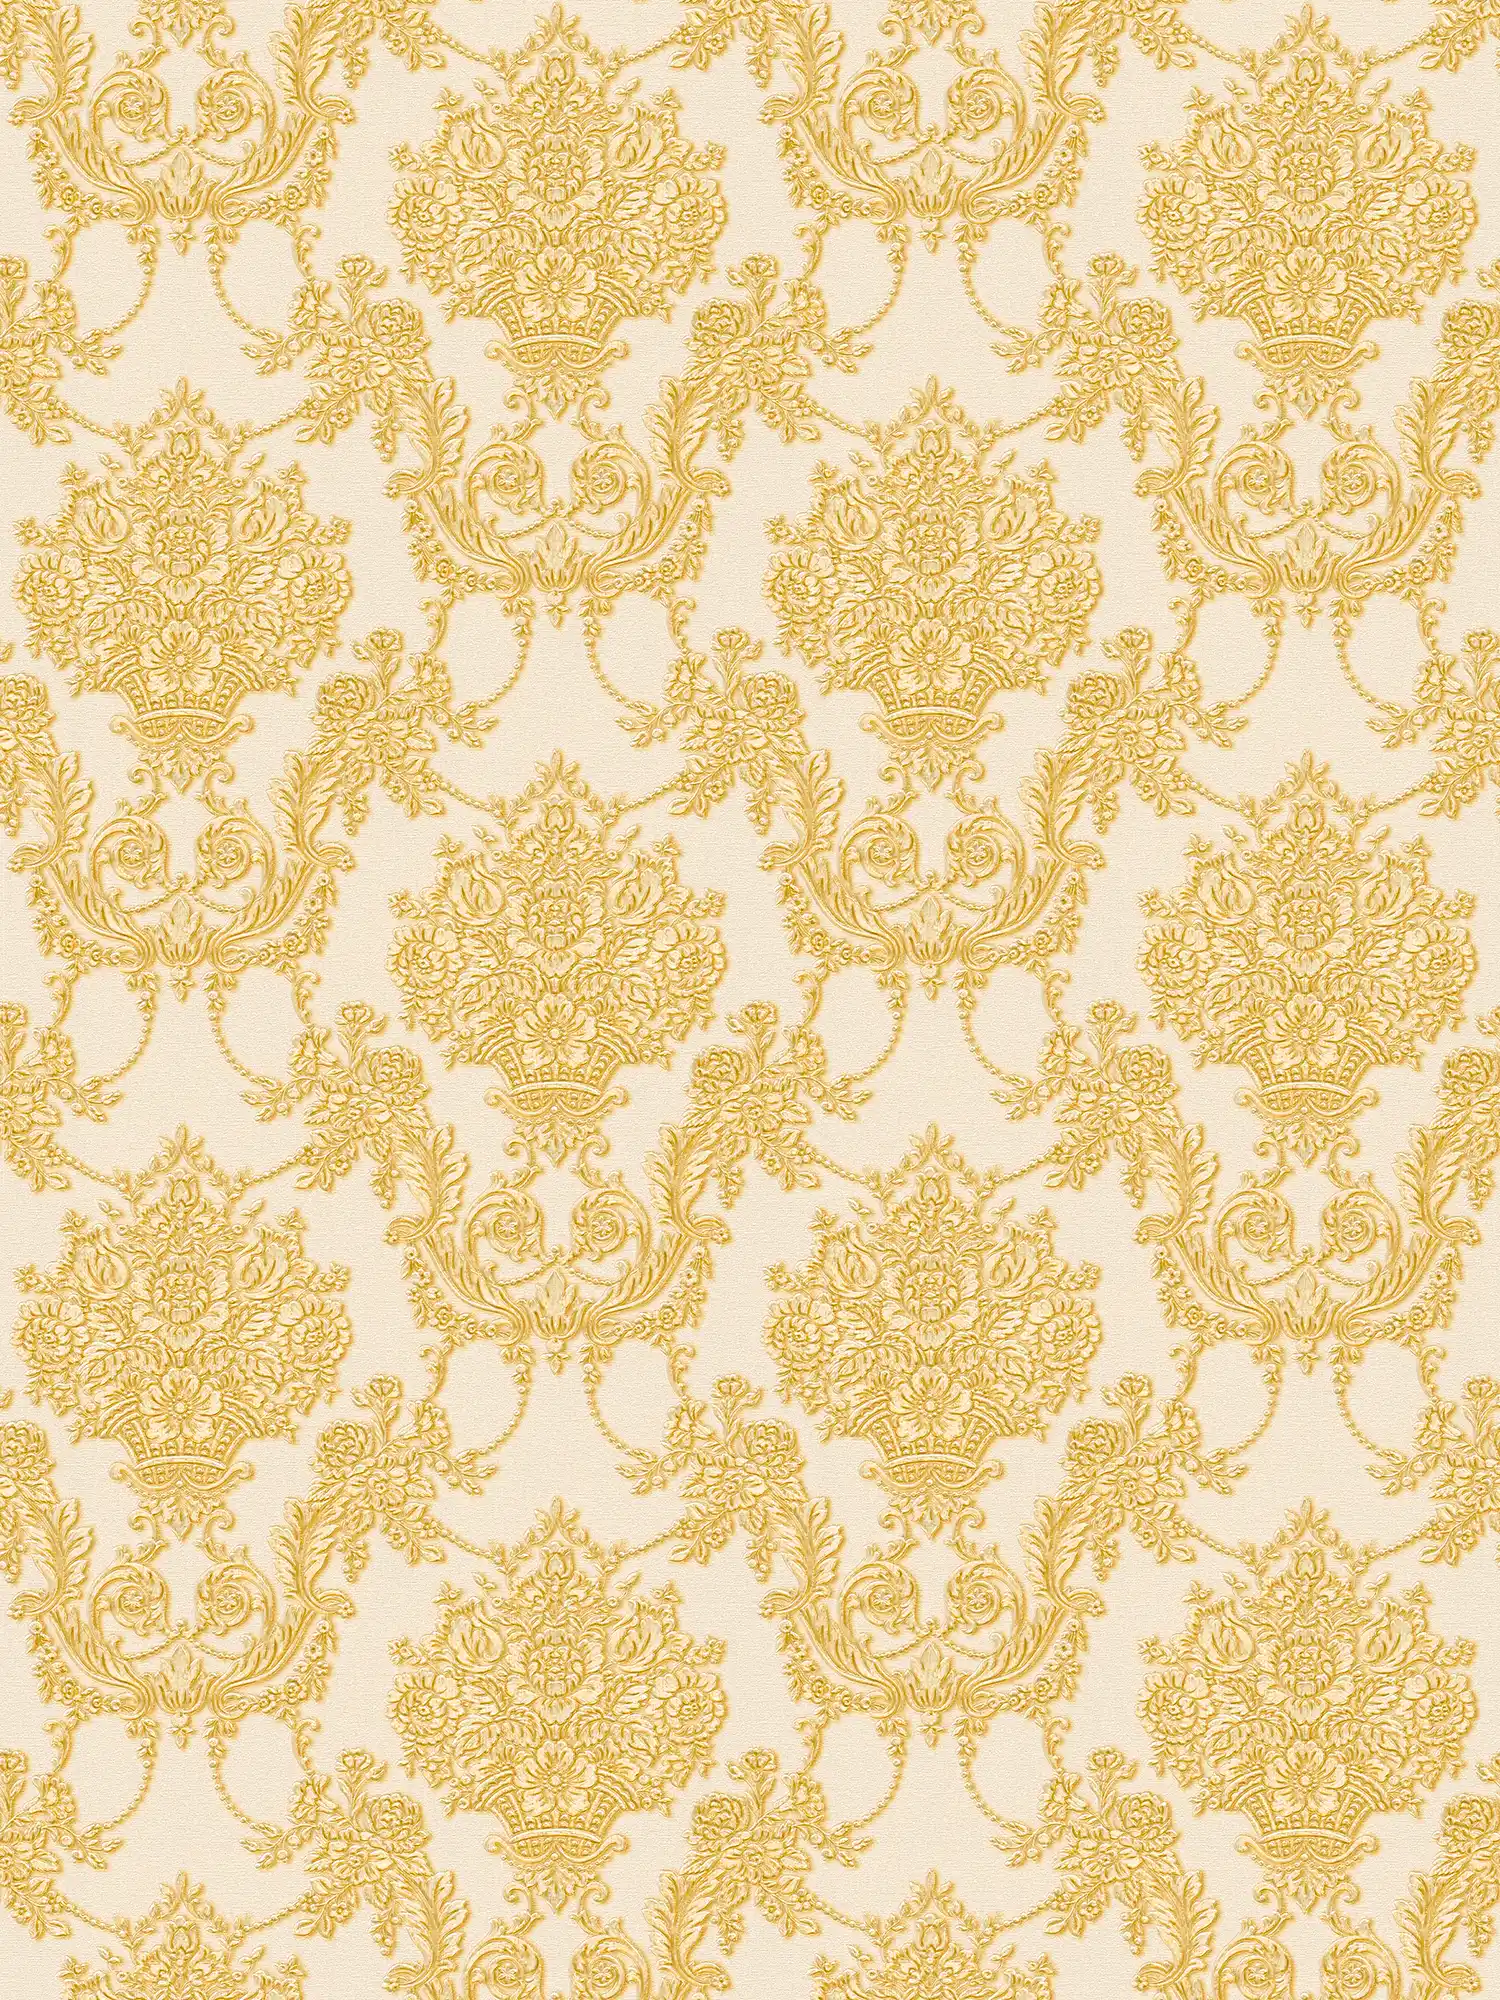         Goldene Barock-Tapete mit floralem Muster – Creme, Metallic
    